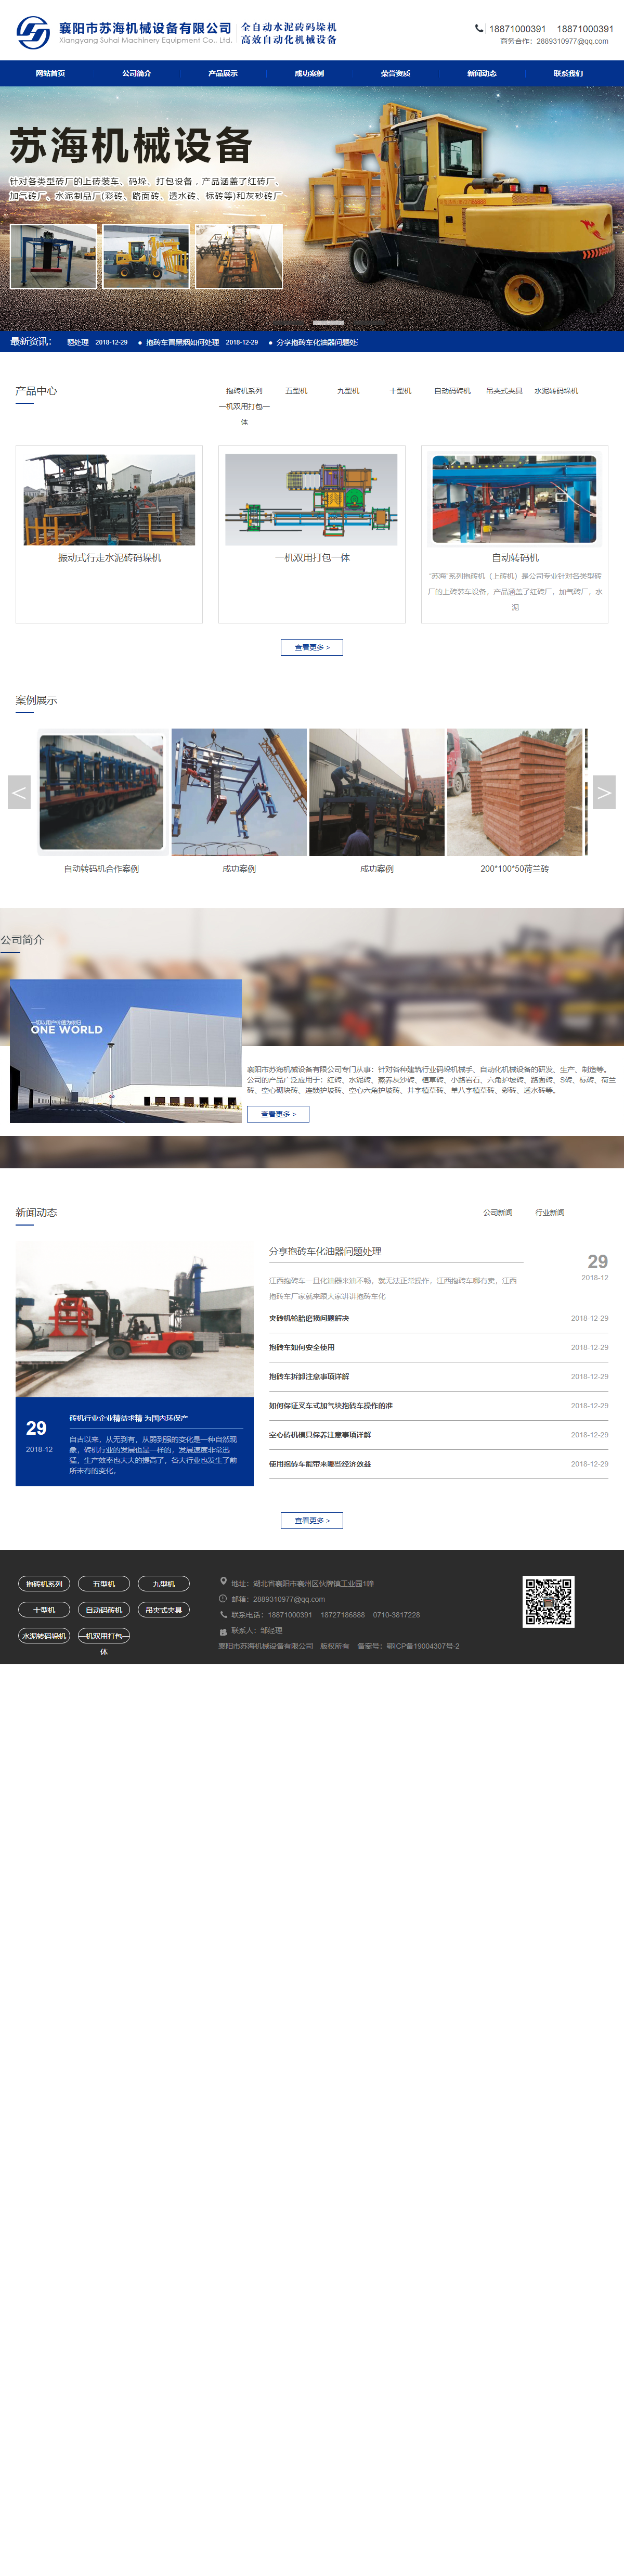 襄阳市苏海机械设备有限公司网站案例